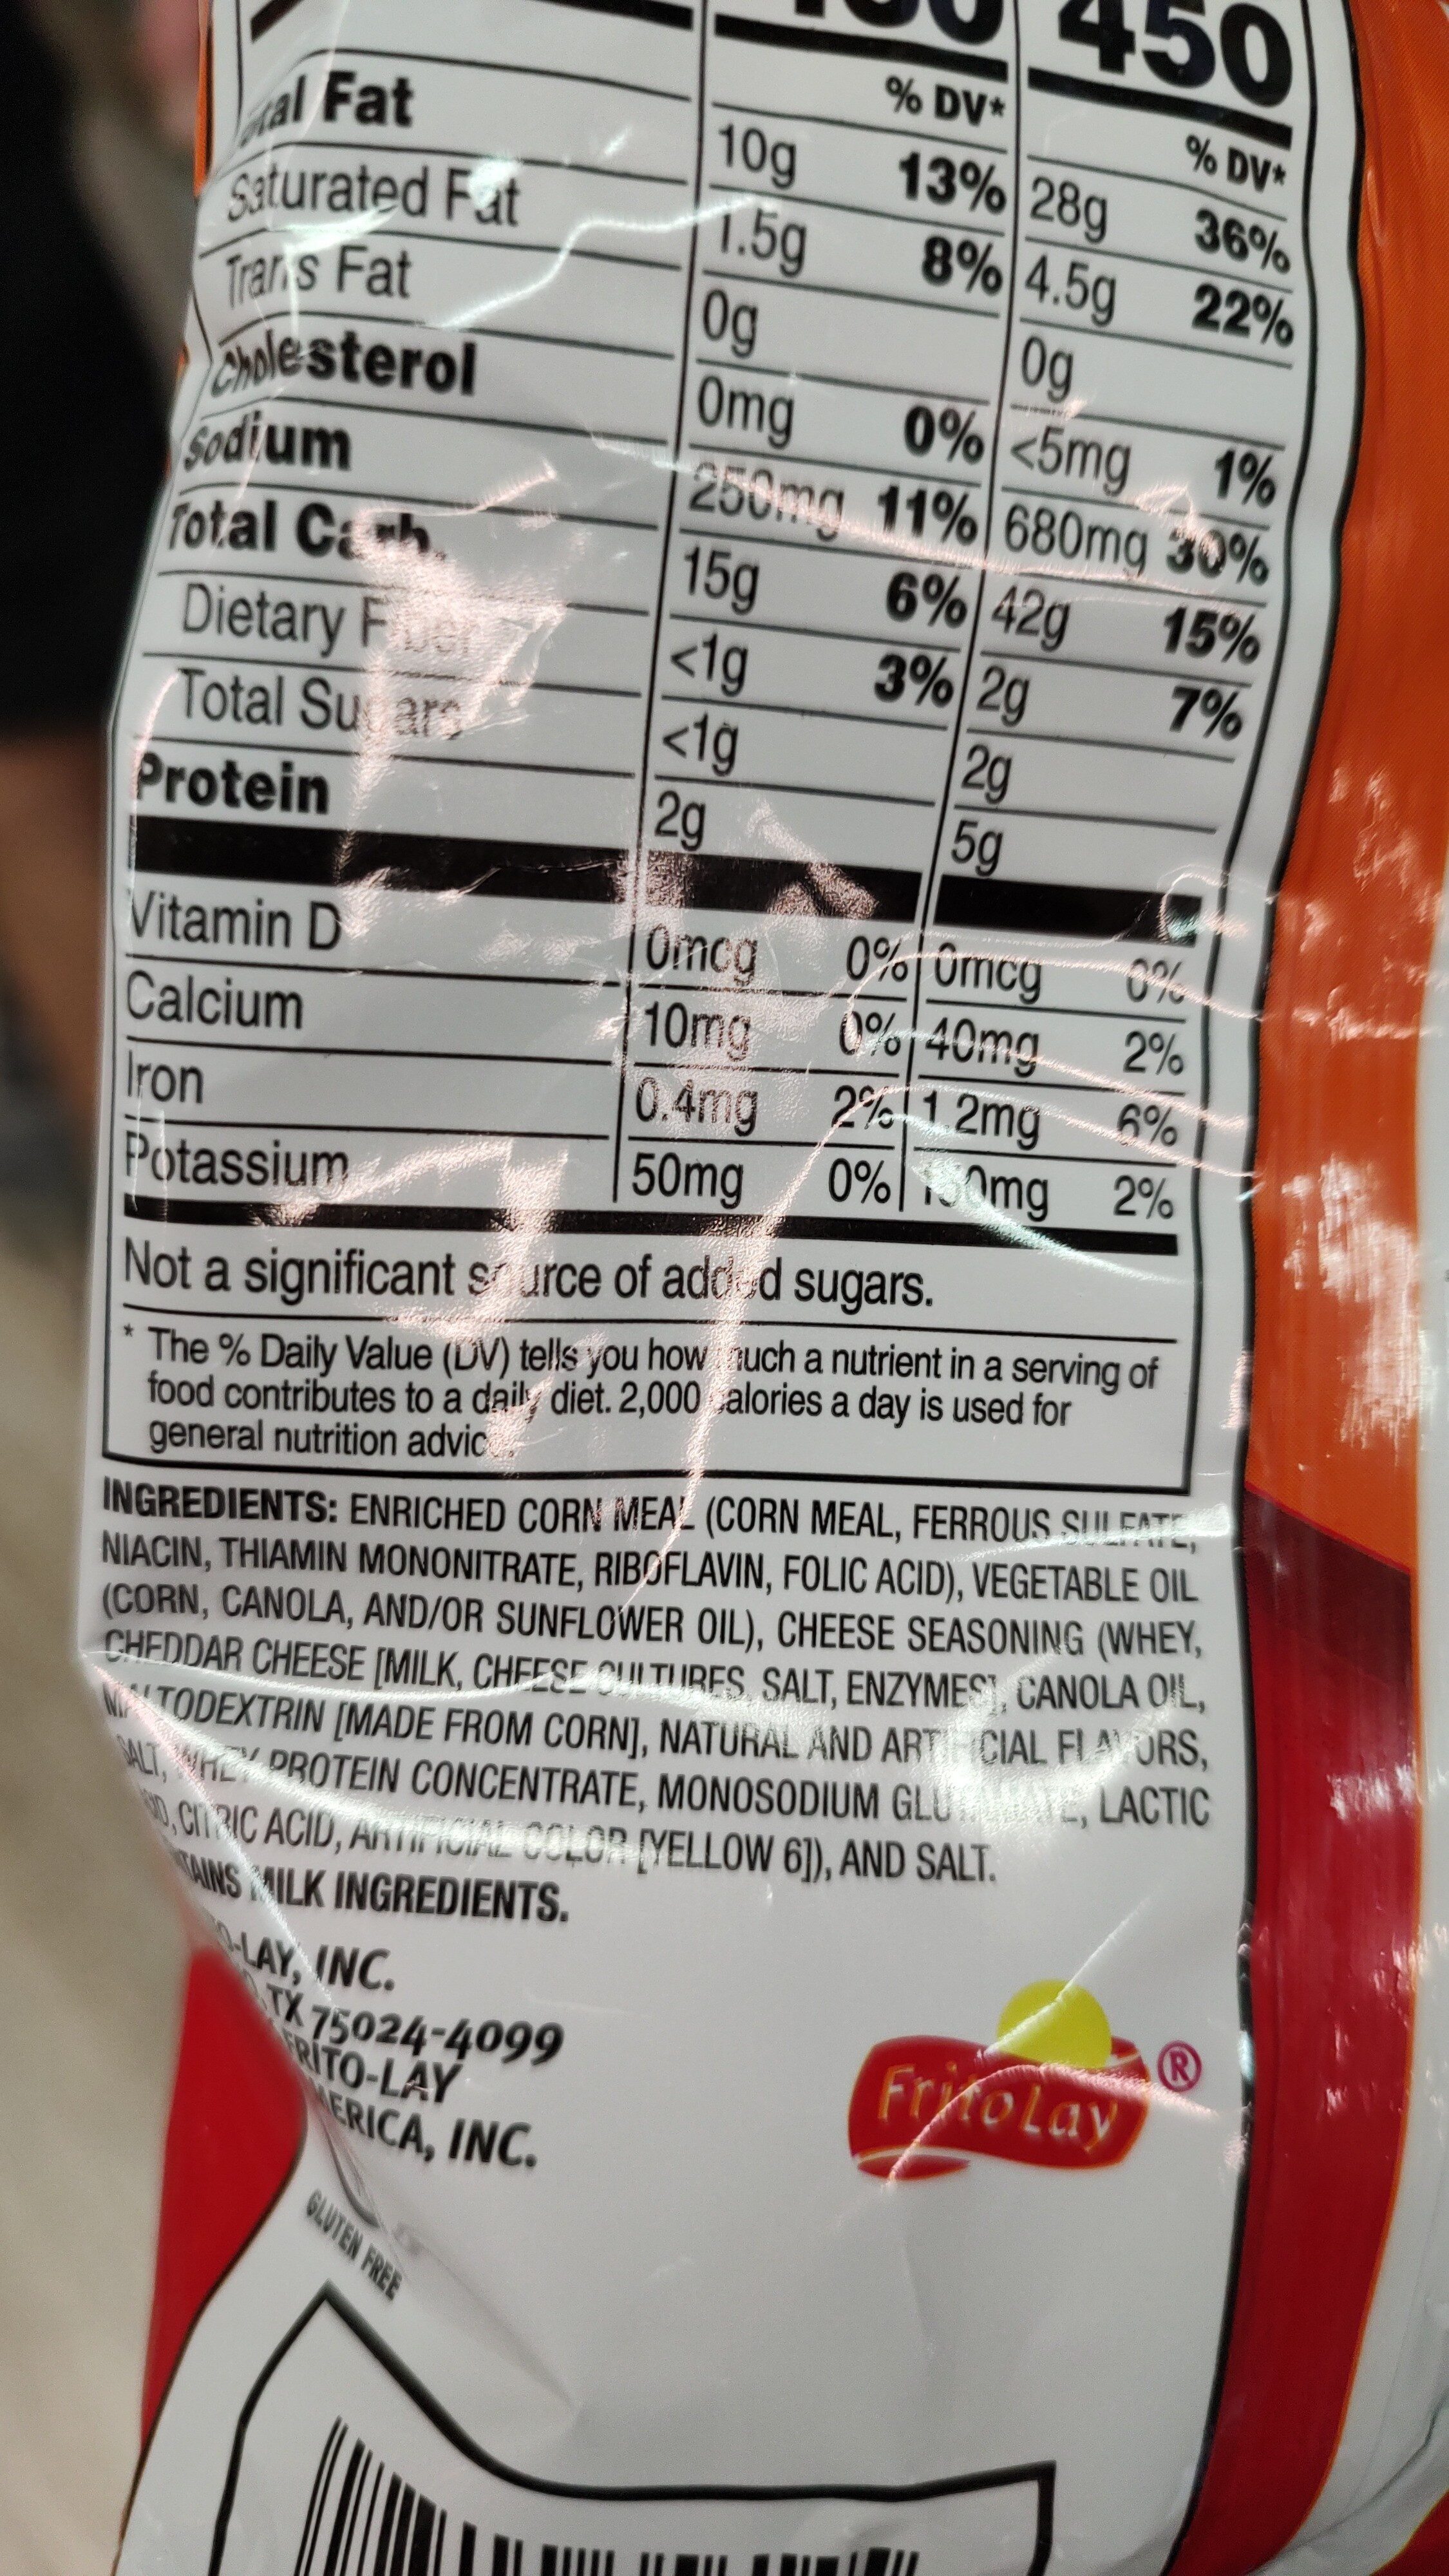 Cheetos Crunchy - Ingredients